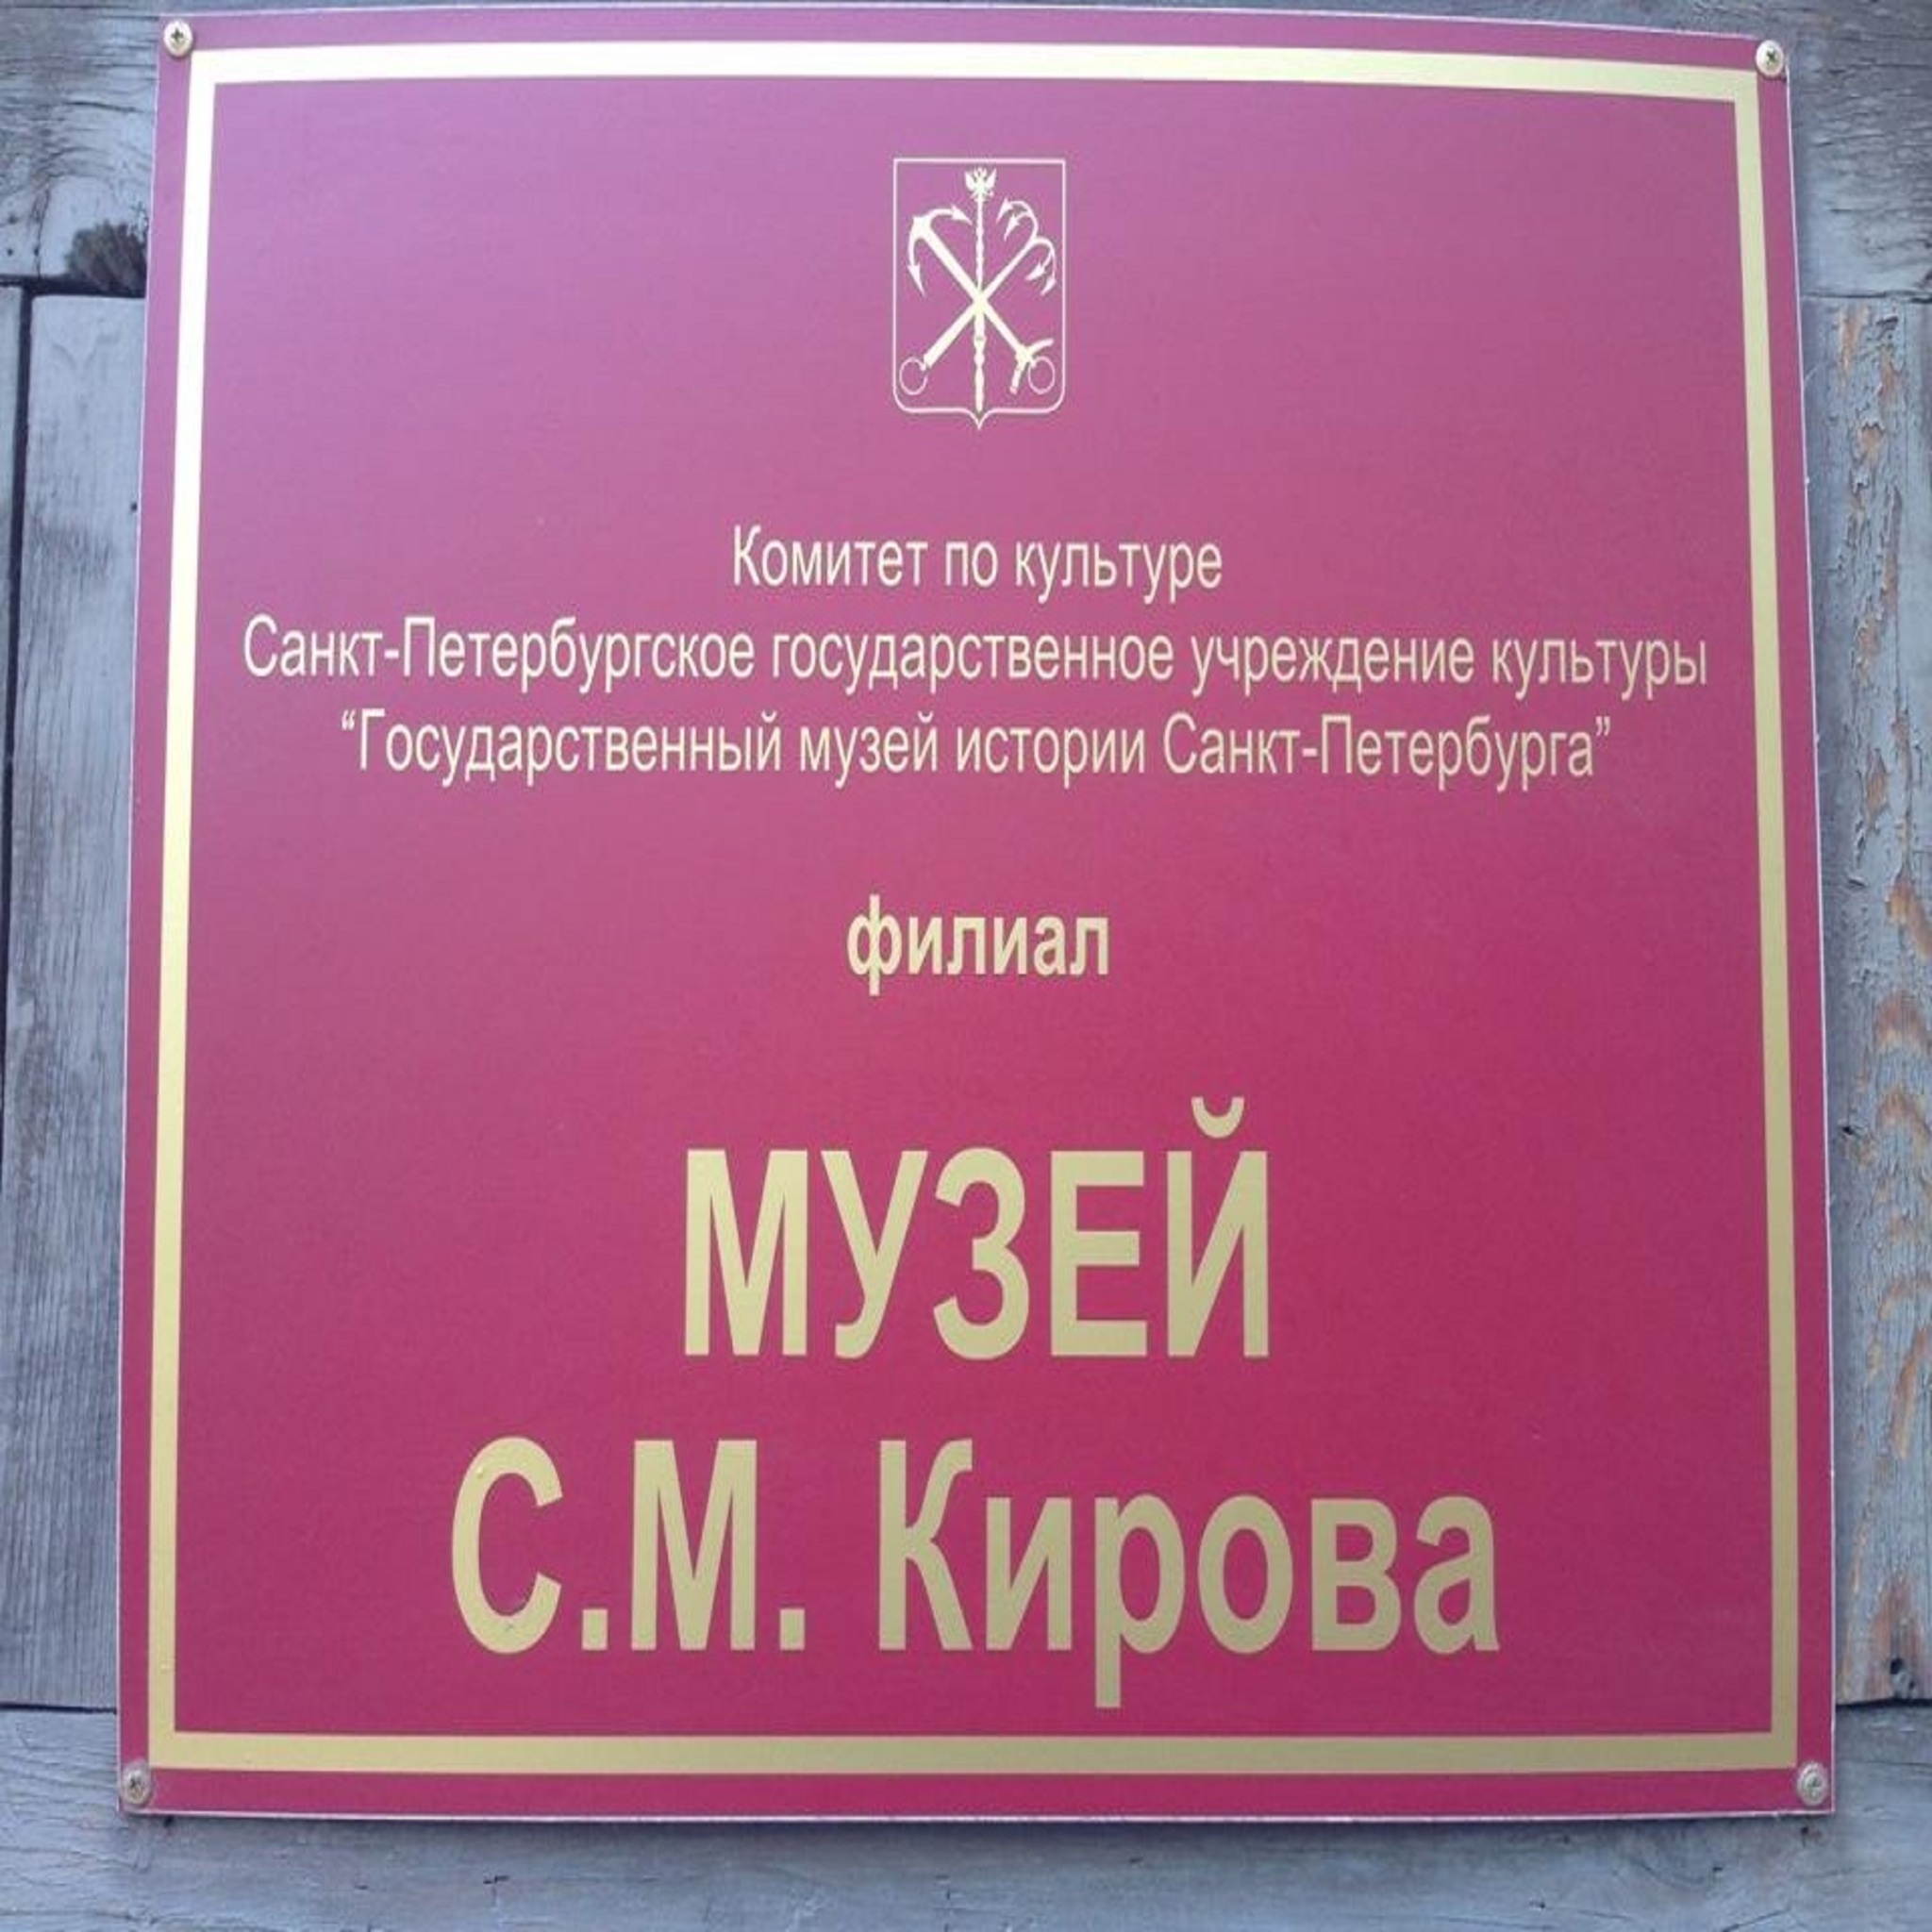 Museum Kirov